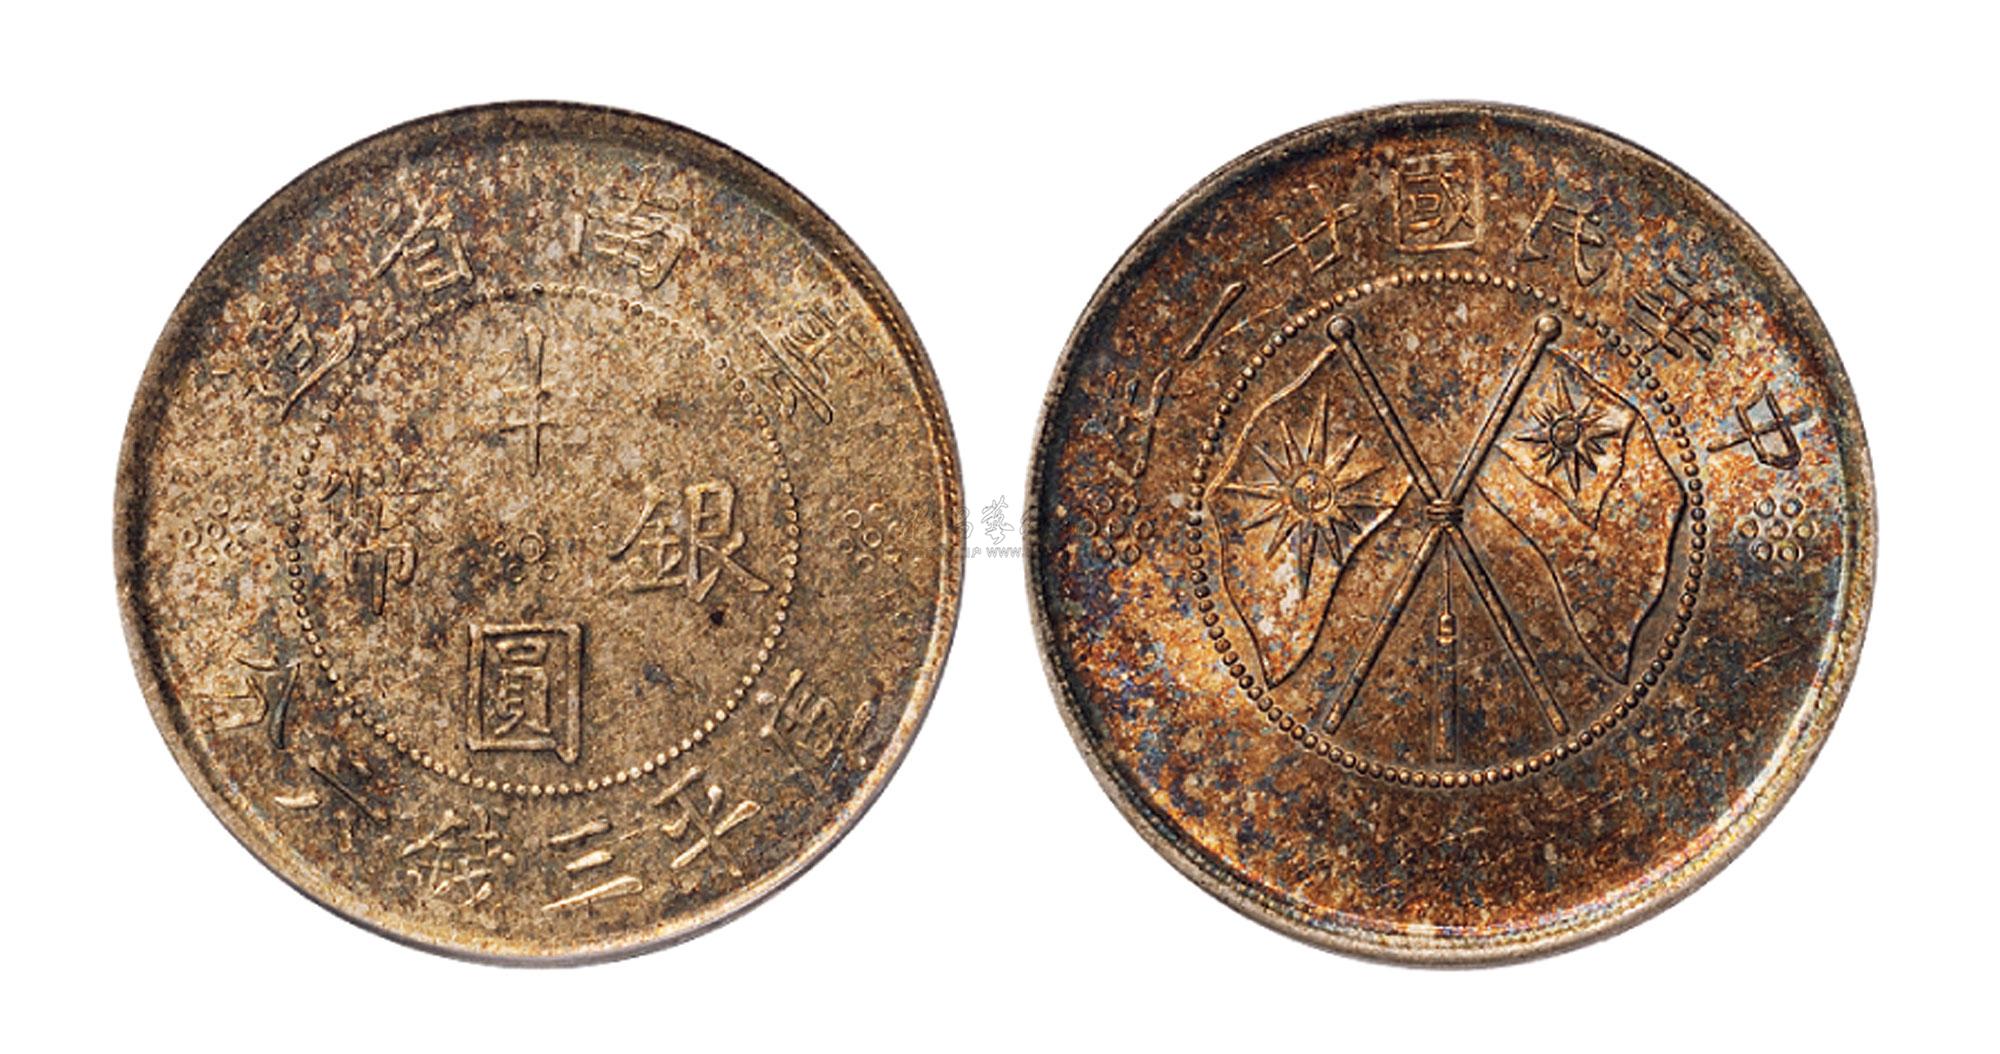 2856 民国二十一年云南省造双旗半圆银币一枚